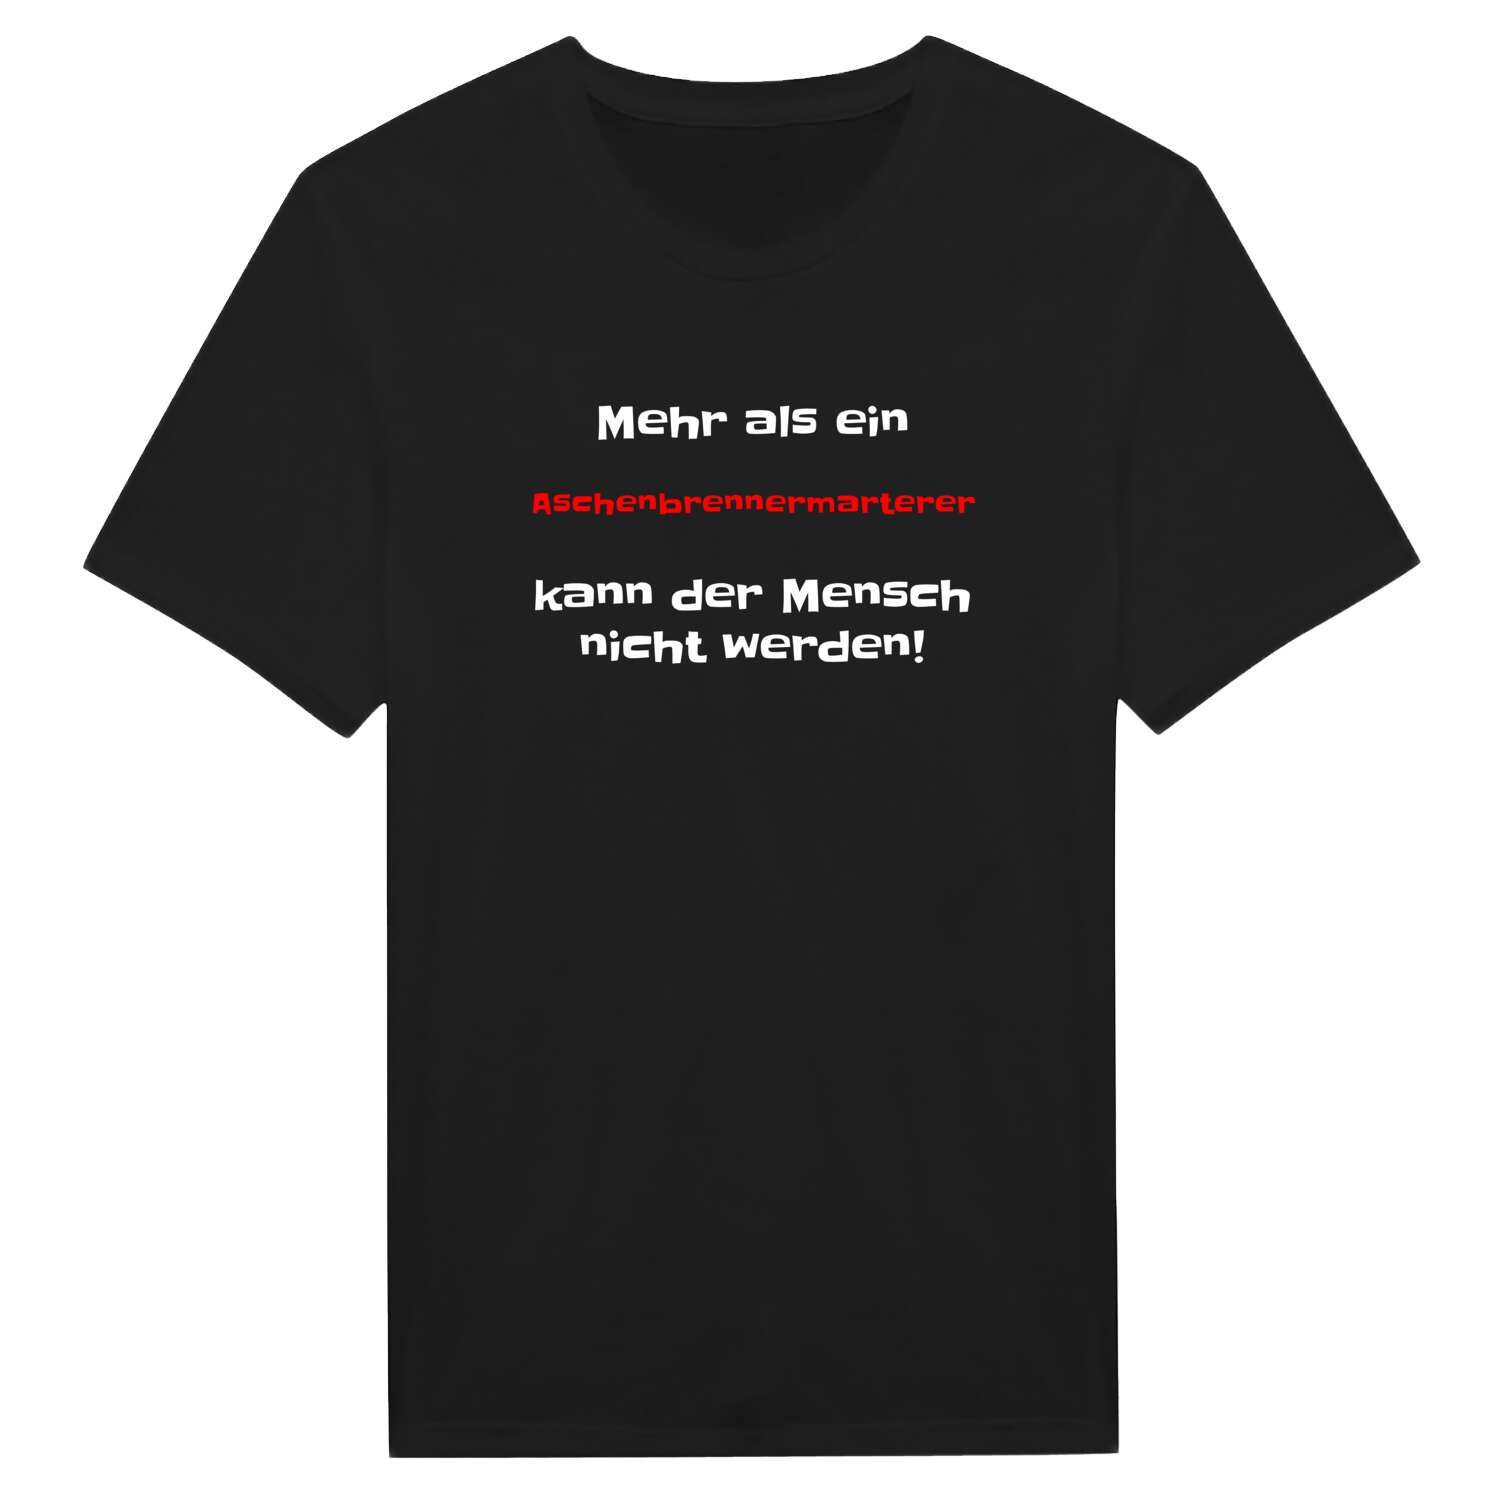 Aschenbrennermarter T-Shirt »Mehr als ein«